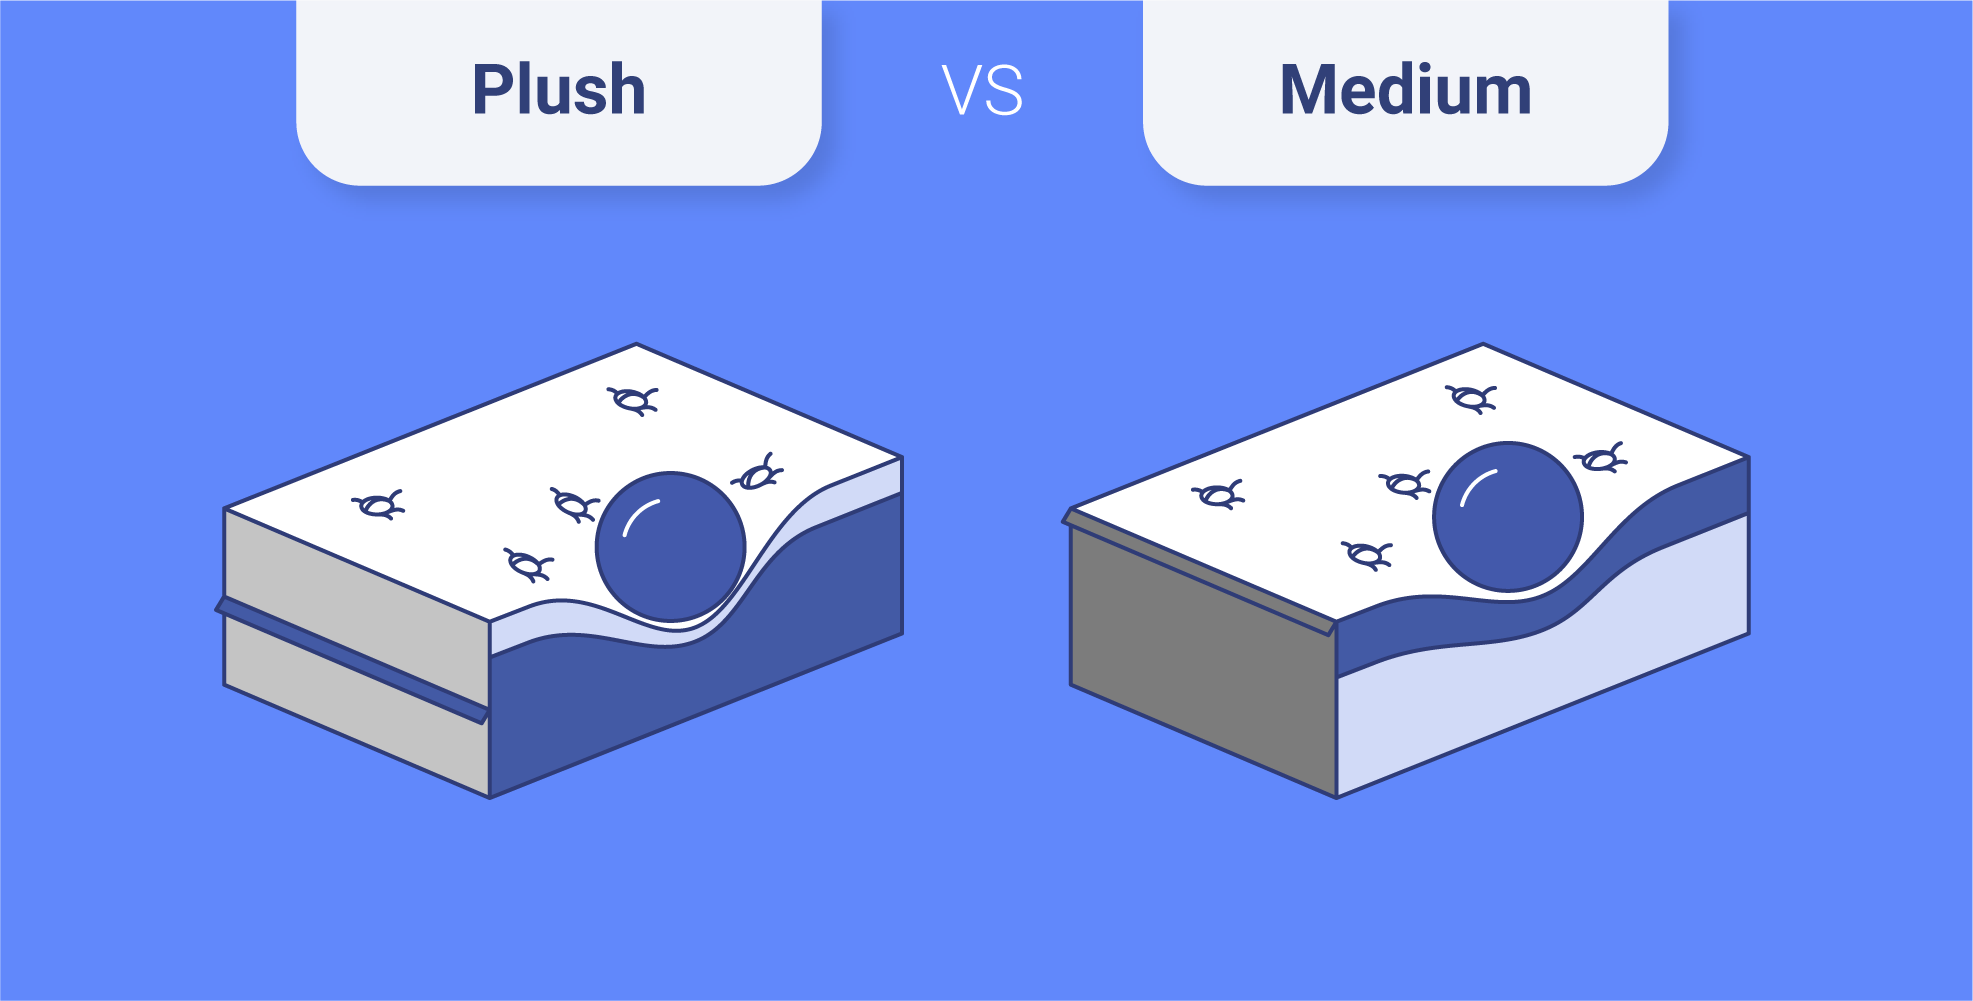 plush vs medium mattress